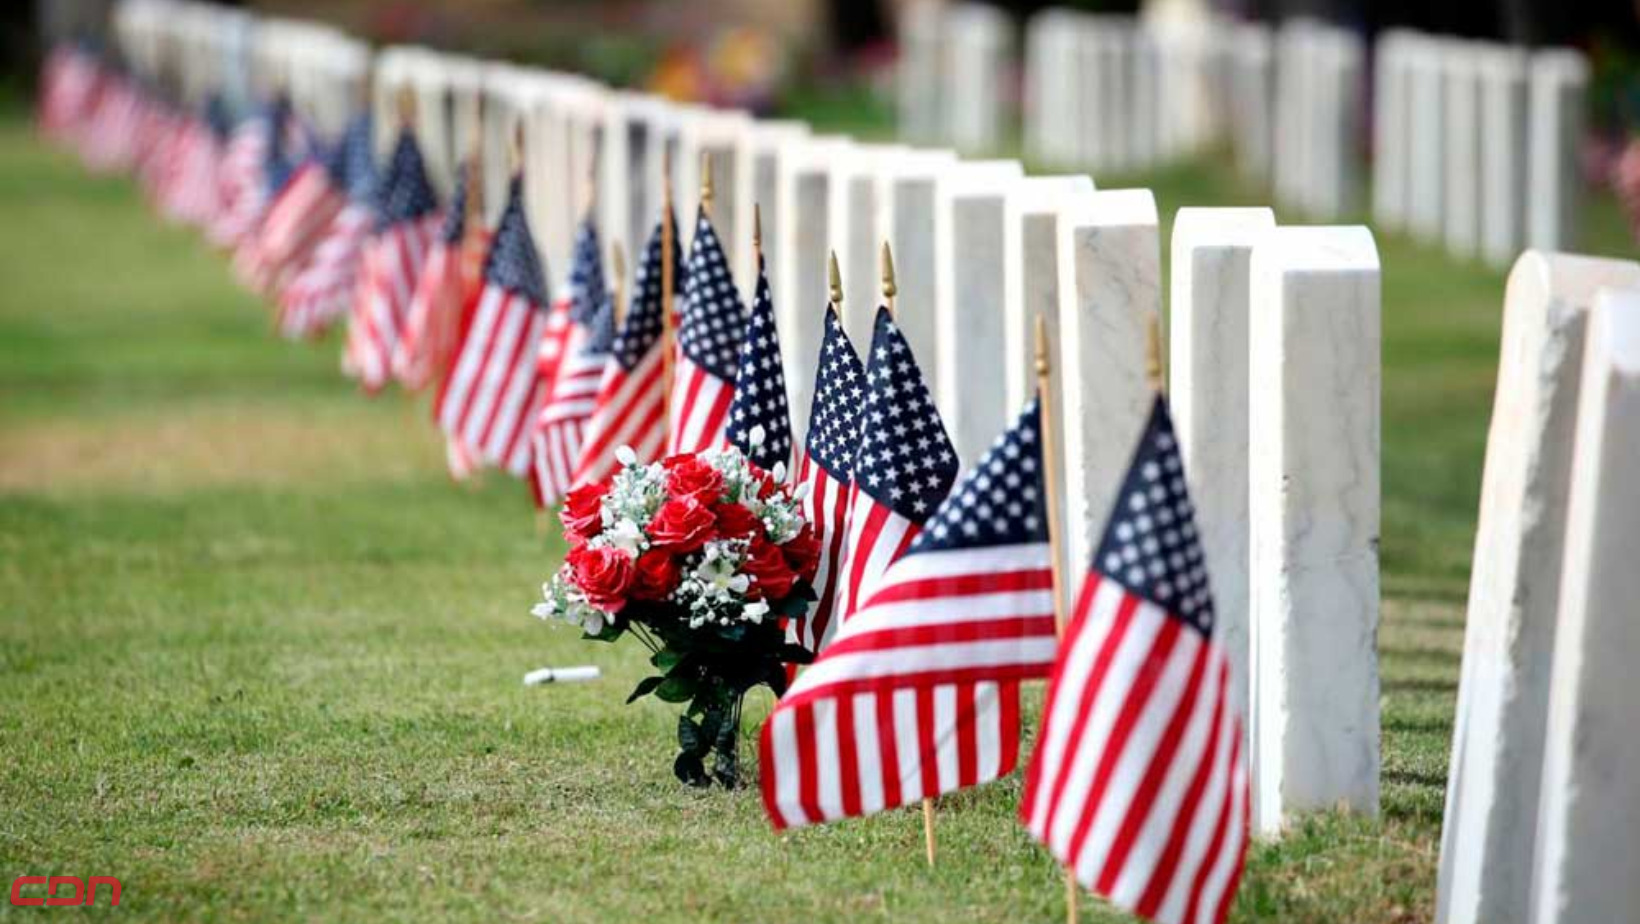 Tumbas decoradas con banderas de los Estados Unidos para celebrar el Memorial Day. Foto: Fuente externa